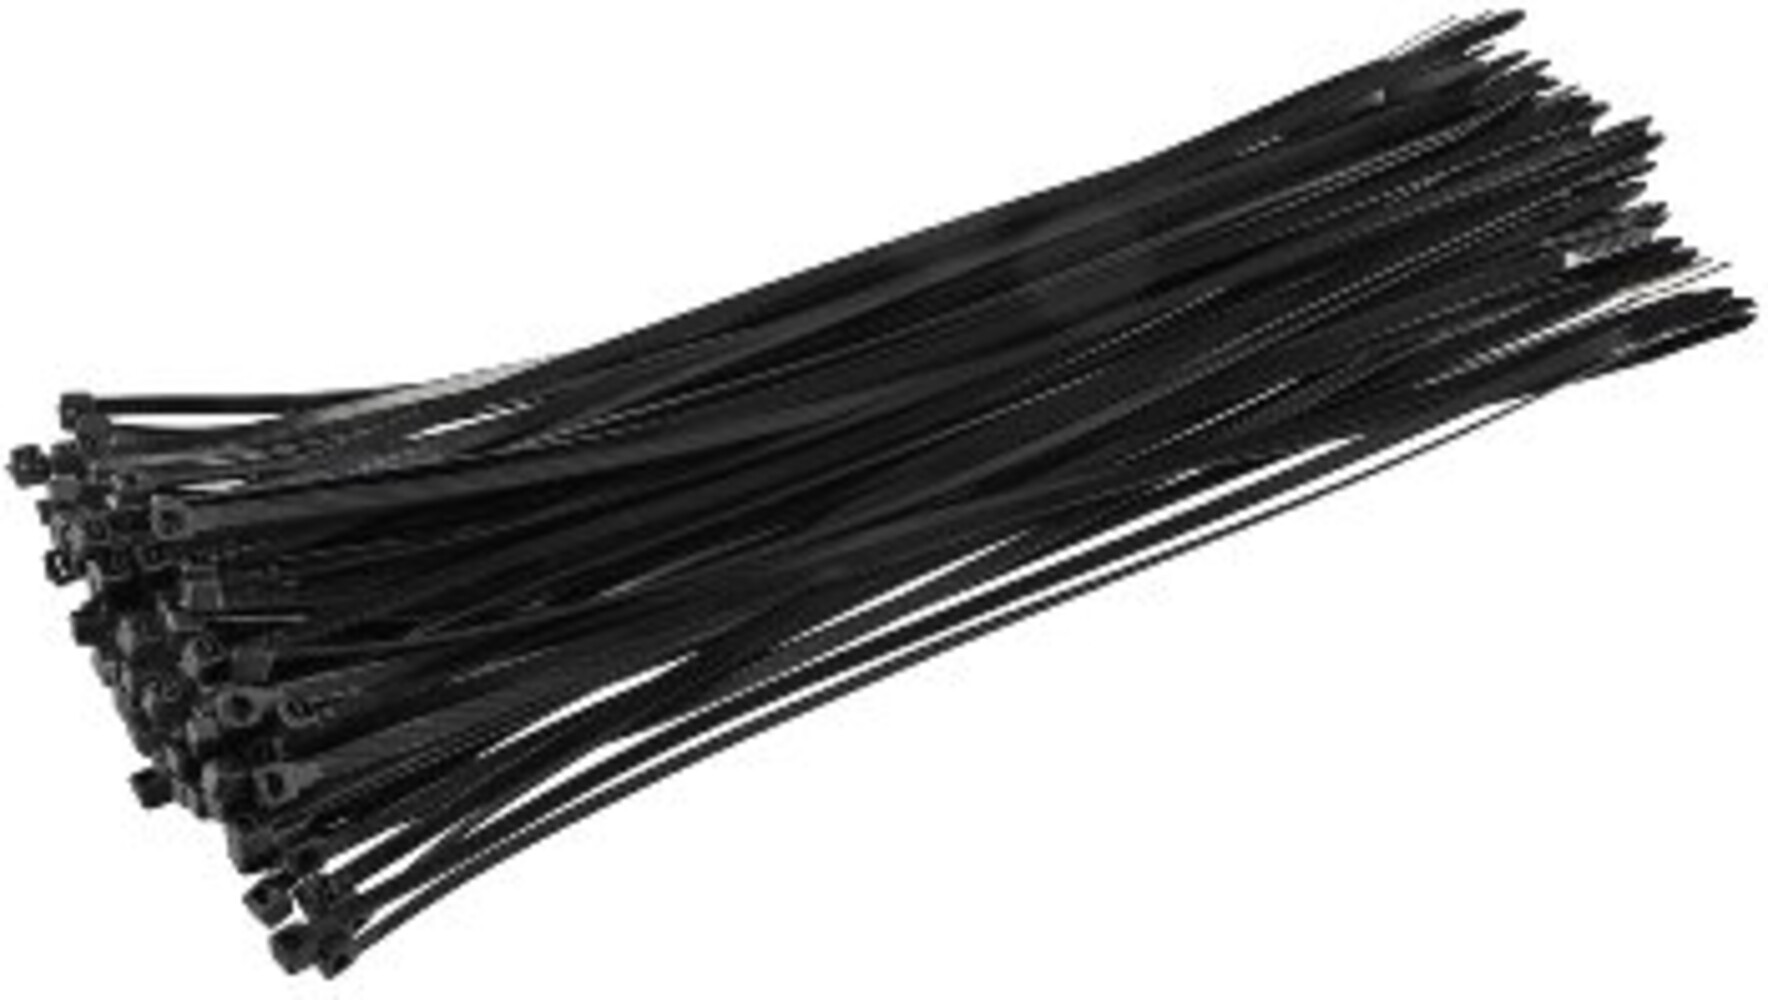 Stabile schwarze Kabelbinder von ChiliTec mit hoher Zugkraft, UV-resistent. Verpackung beinhaltet 100 Stück.